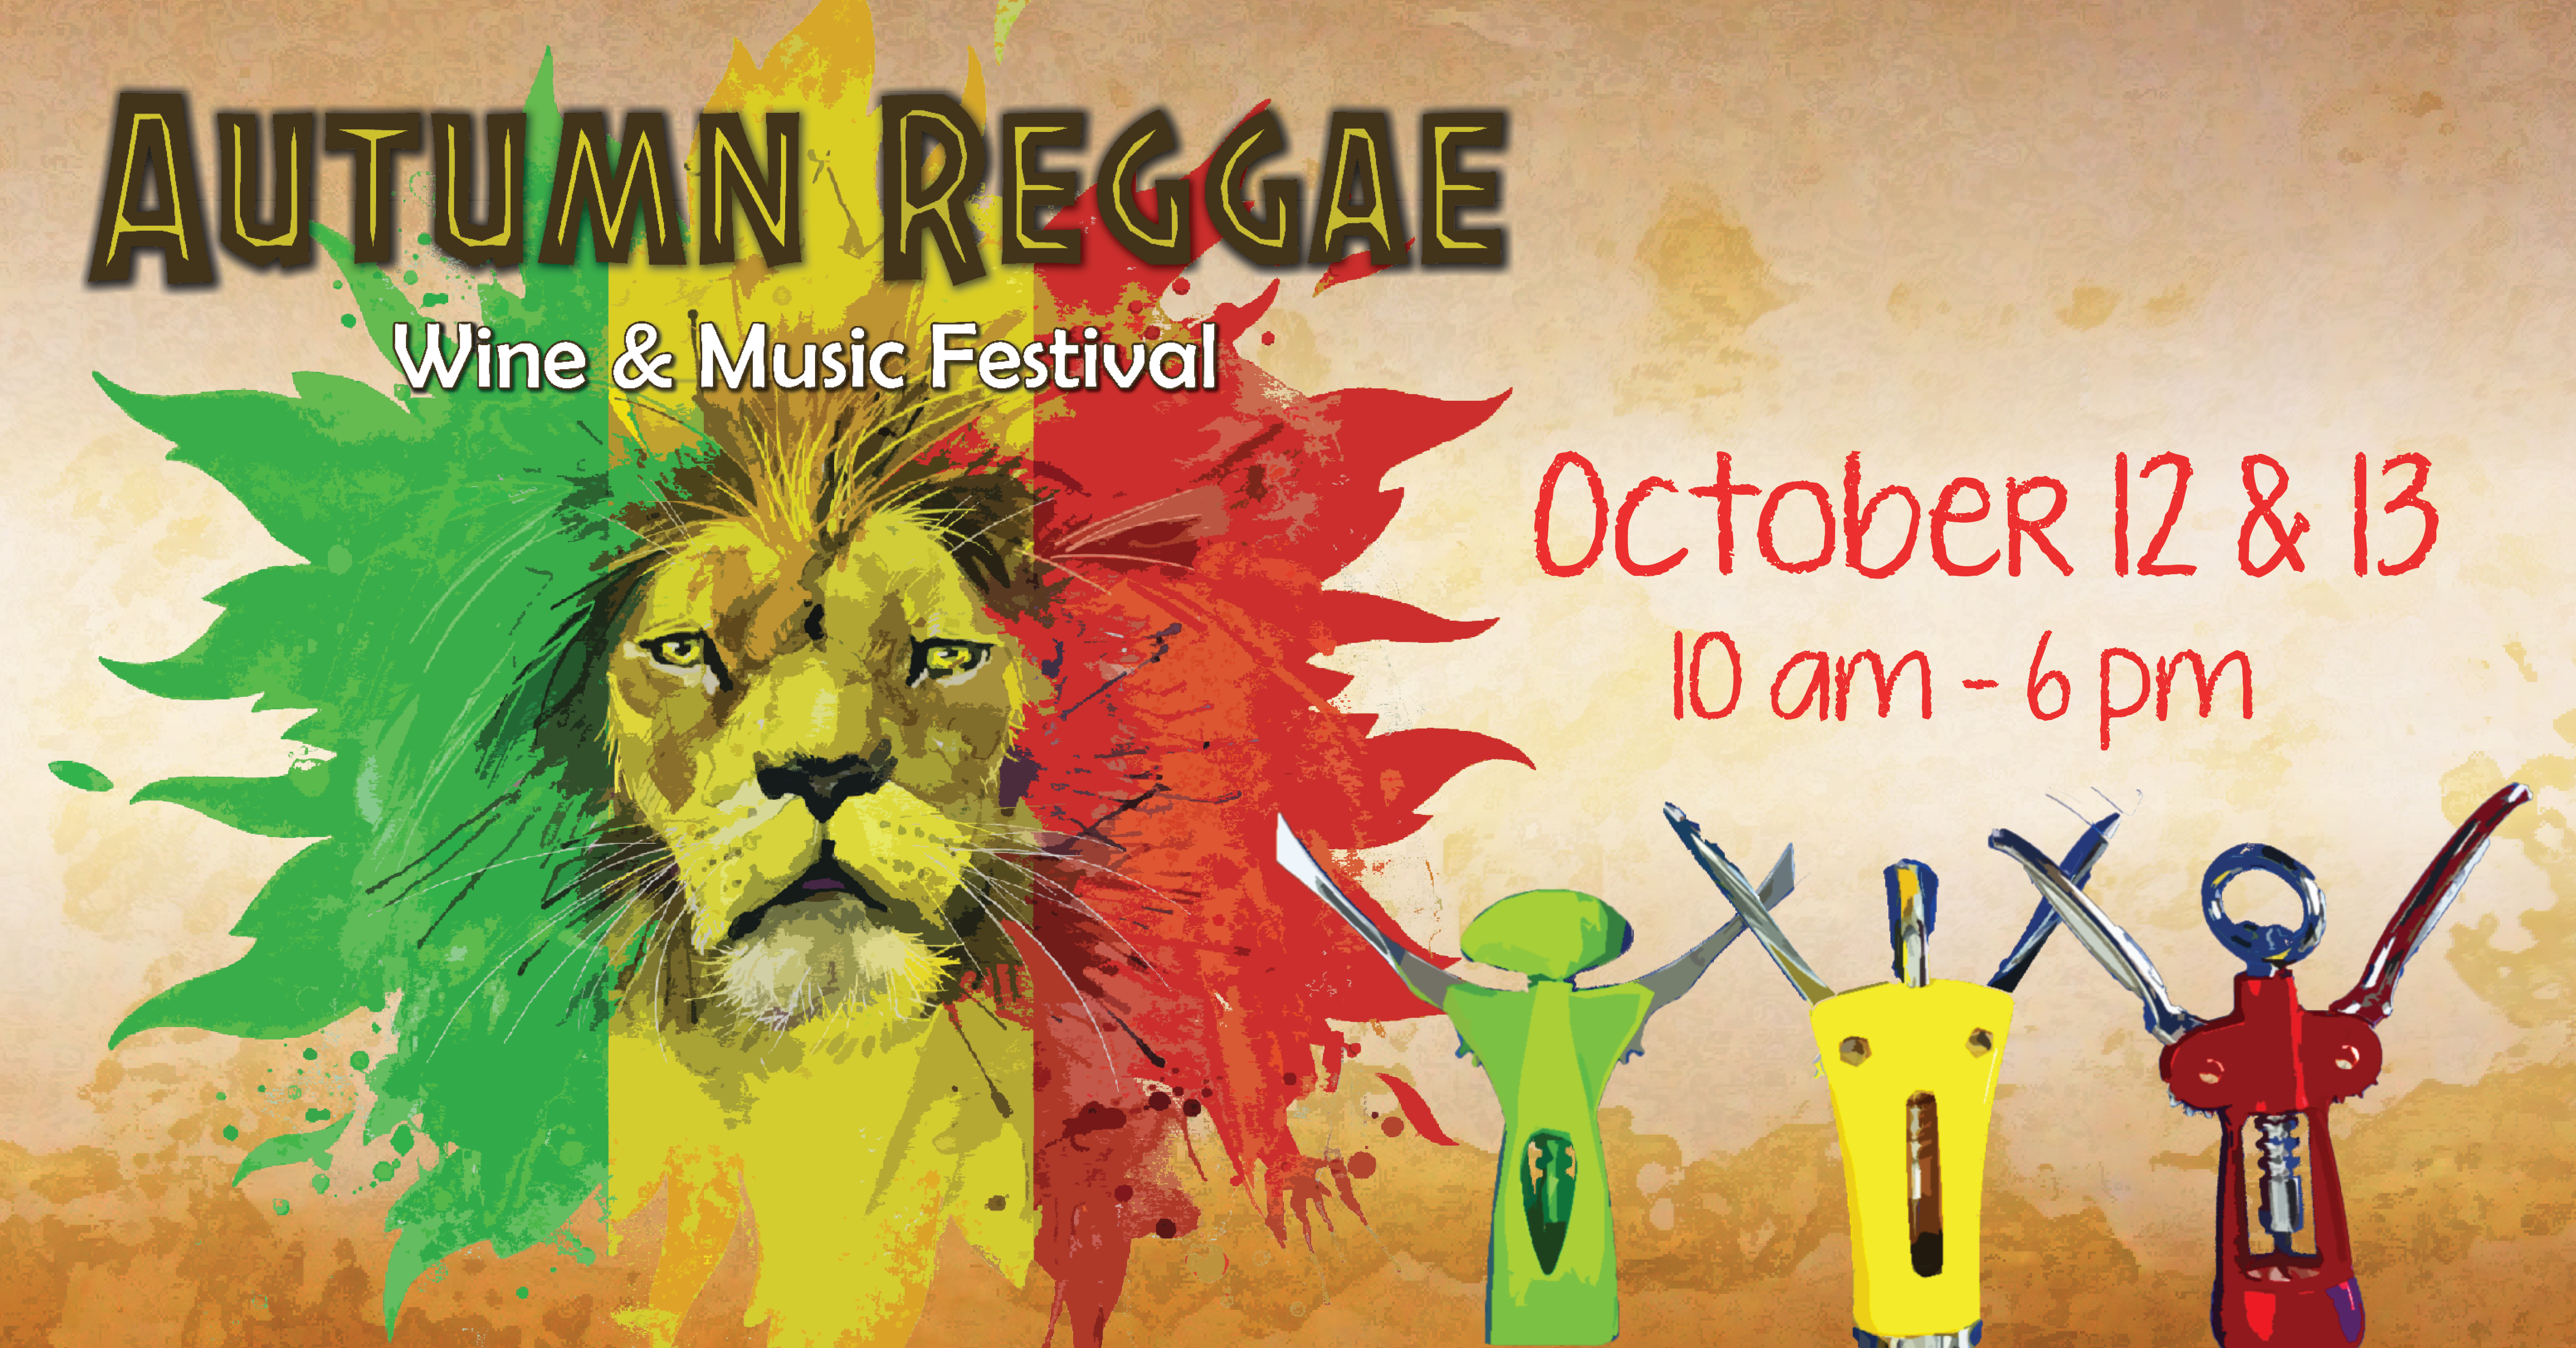 autumn reggae fest event announcement